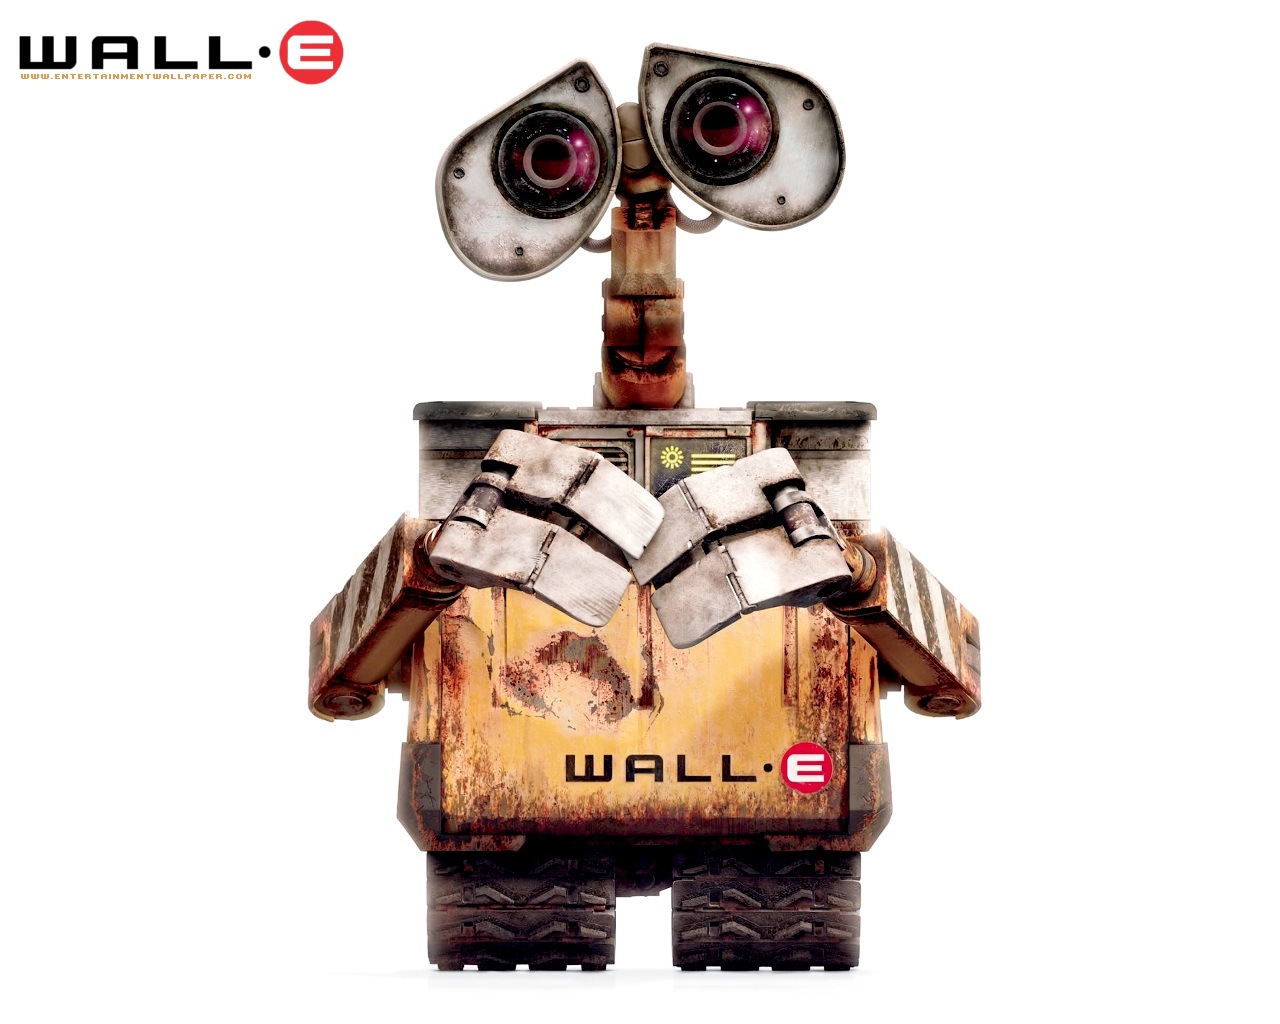 壁纸1280x1024 可爱 WALL E 机器人瓦力 壁纸壁纸 动画电影《机器人总动员WALL·E 》全套壁纸壁纸 动画电影《机器人总动员WALL·E 》全套壁纸图片 动画电影《机器人总动员WALL·E 》全套壁纸素材 影视壁纸 影视图库 影视图片素材桌面壁纸